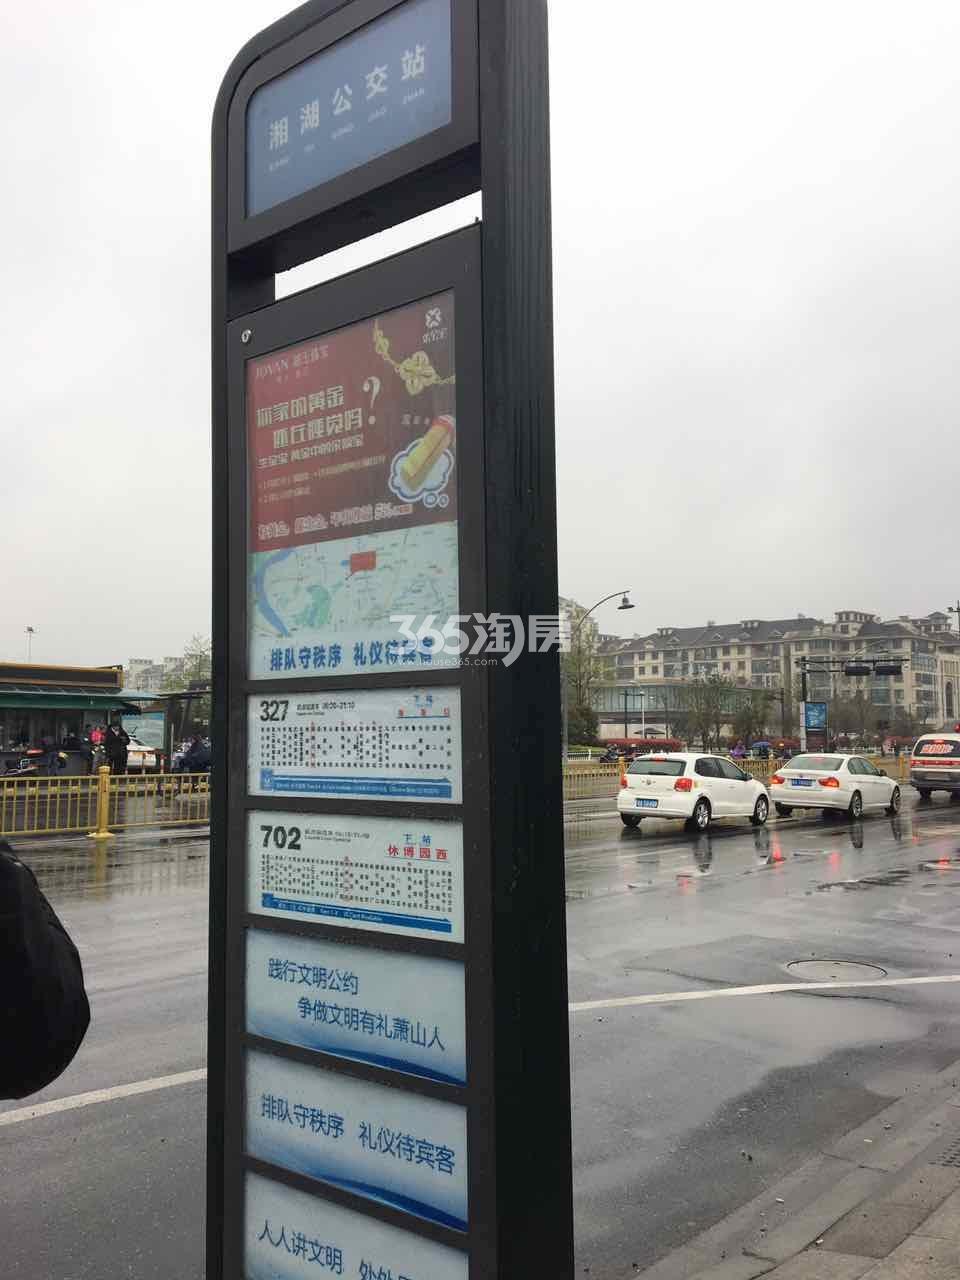 都会艺境周边配套——湘湖公交站实景图 2017.3.30摄